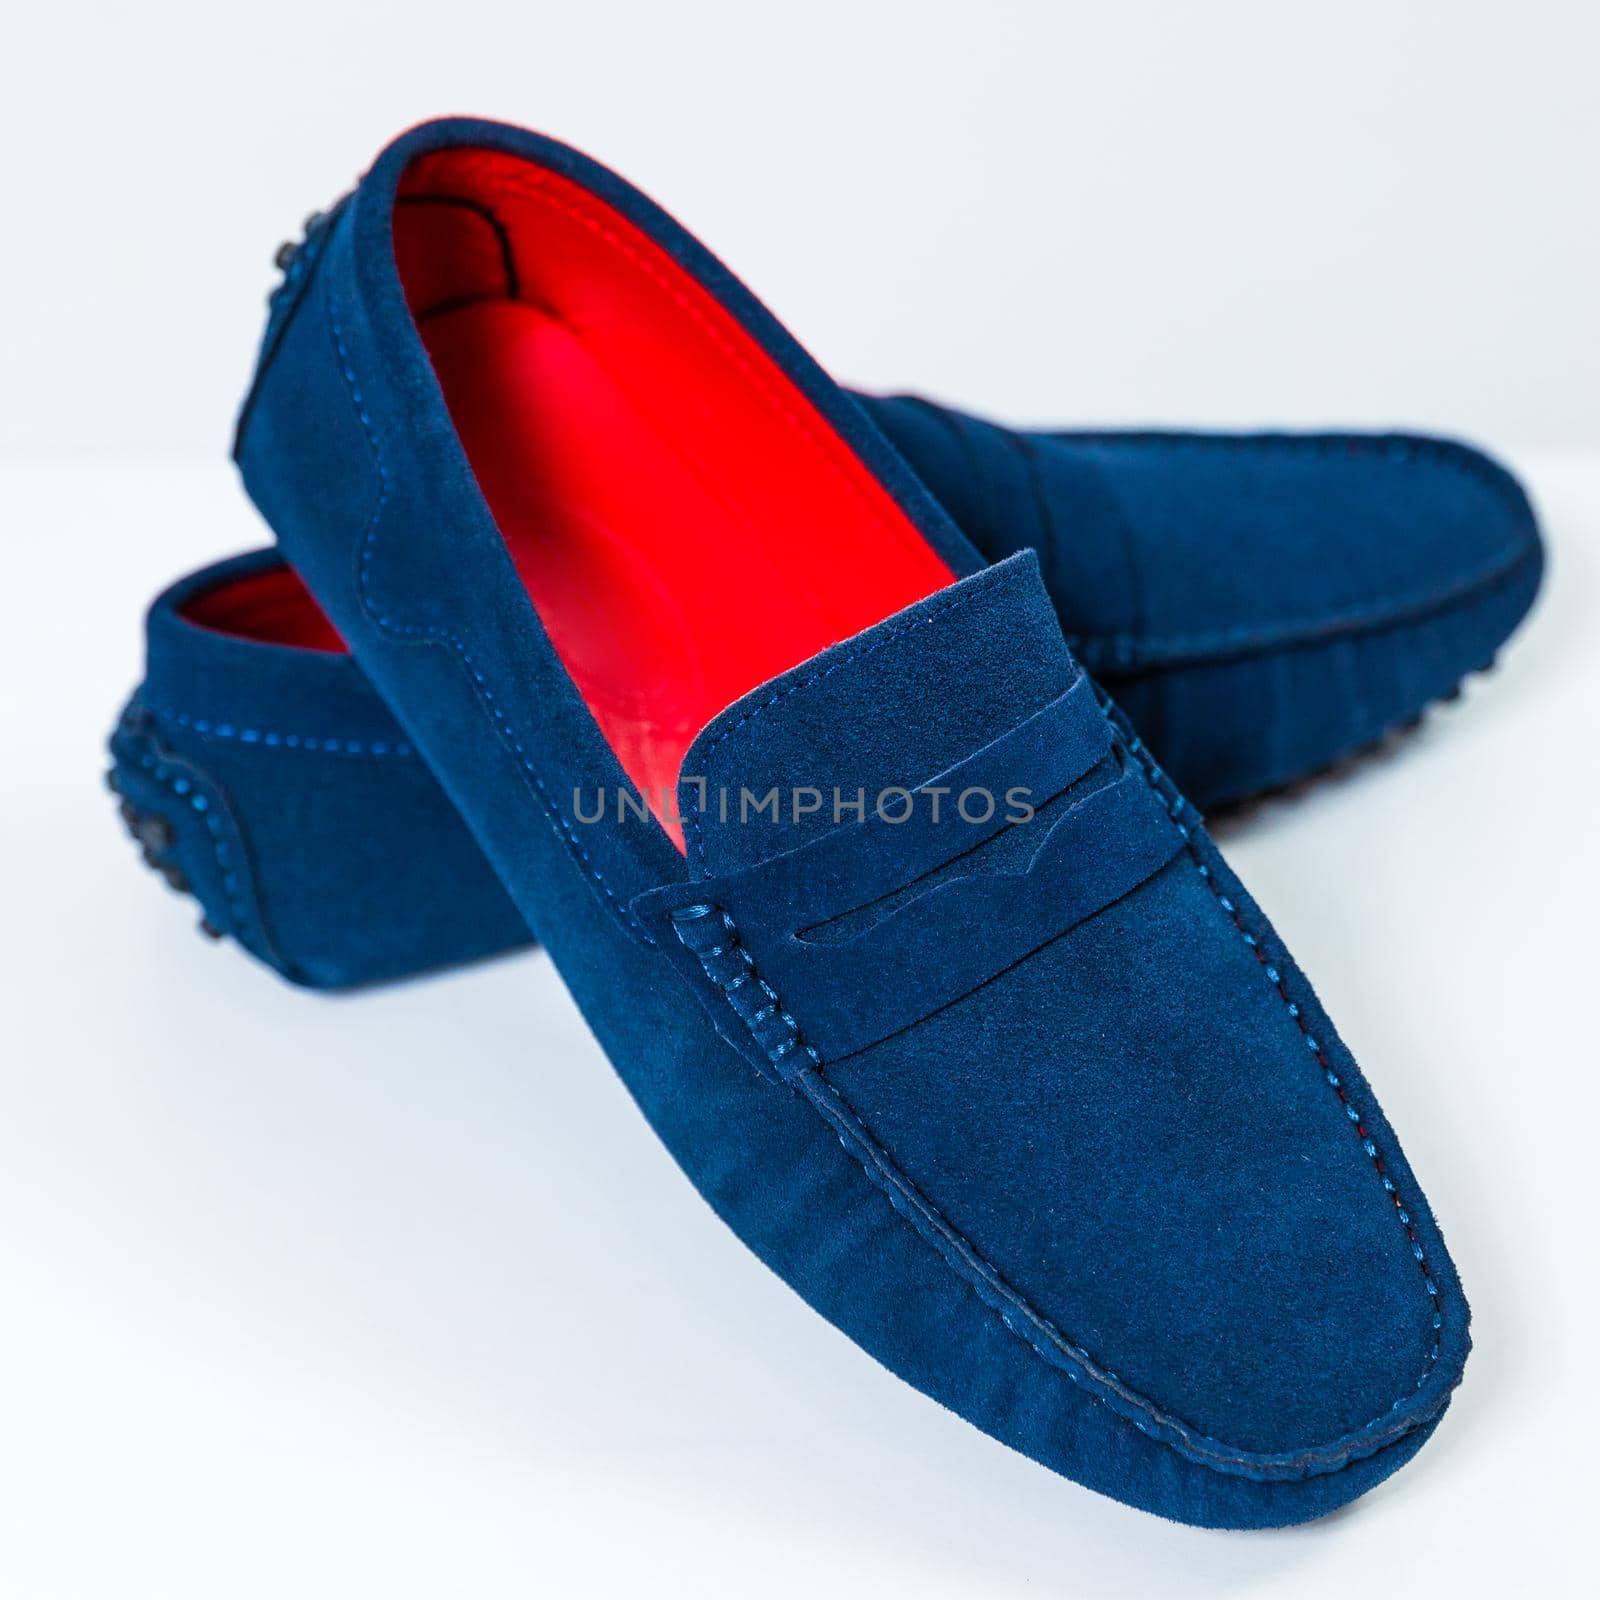 Men's classic blue shoes close up